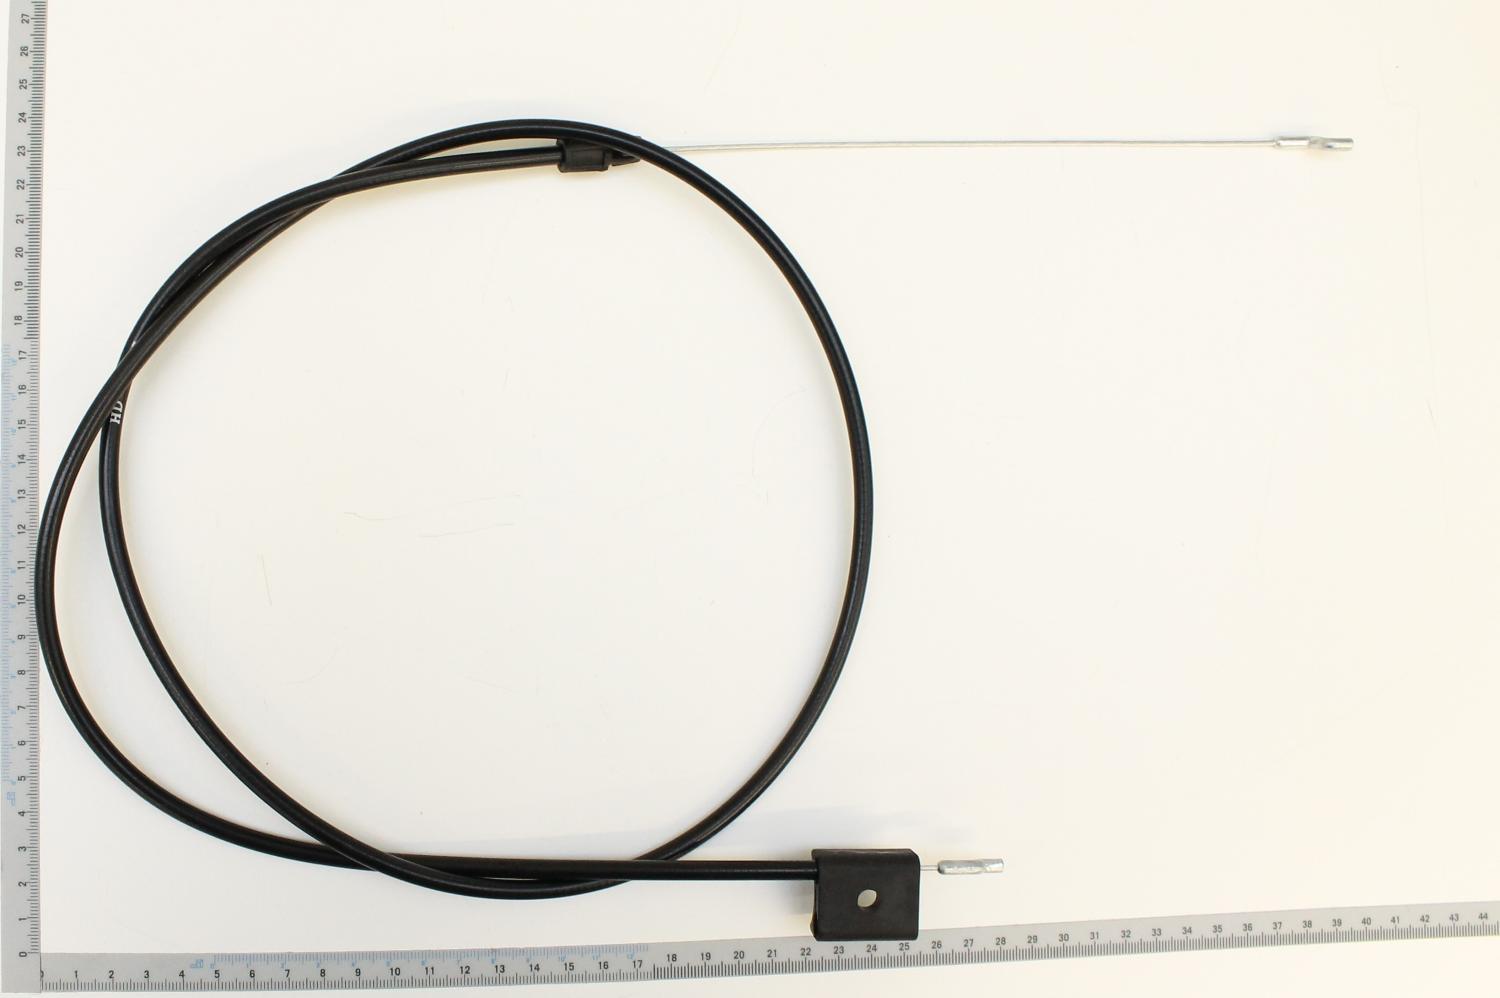 SCHEPPACH - Câble de traction pour tondeuses à gazon MS225-53 et MS196-53B